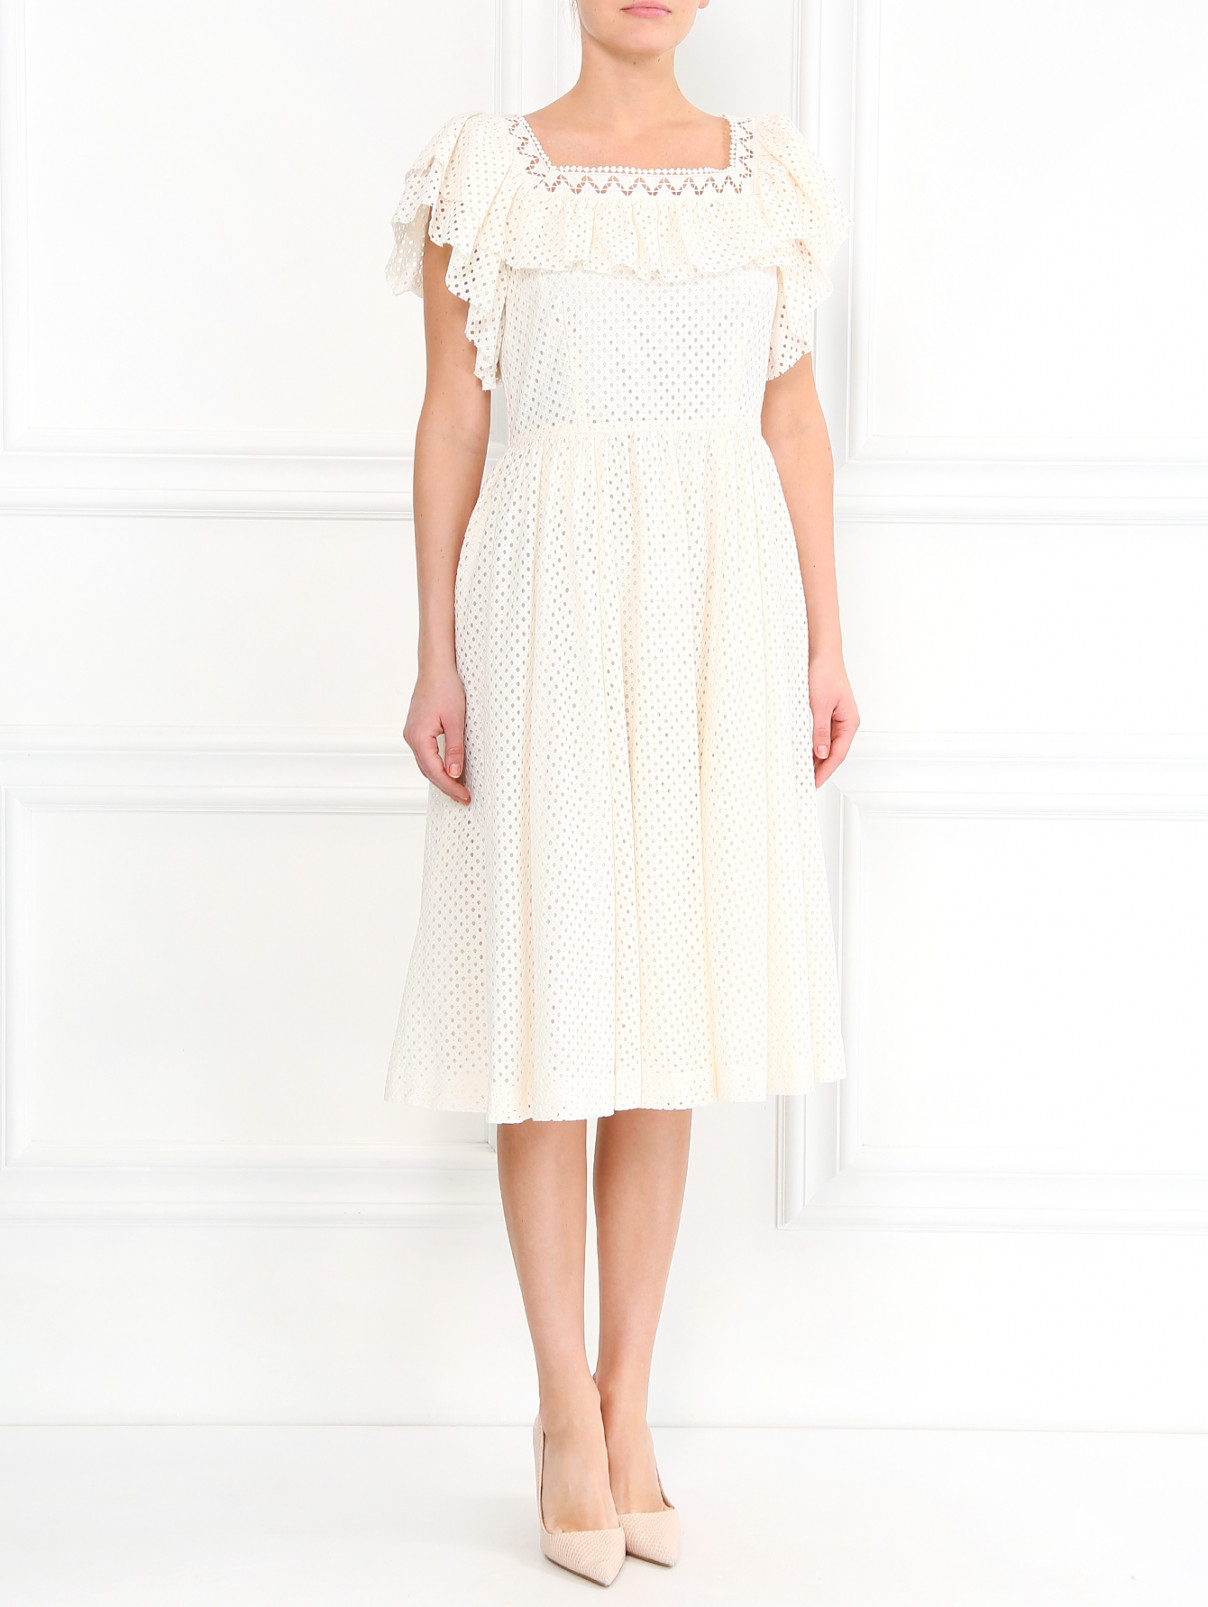 Платье с перфорацией с коротким рукавом Philosophy di Lorenzo Serafini  –  Модель Общий вид  – Цвет:  Белый